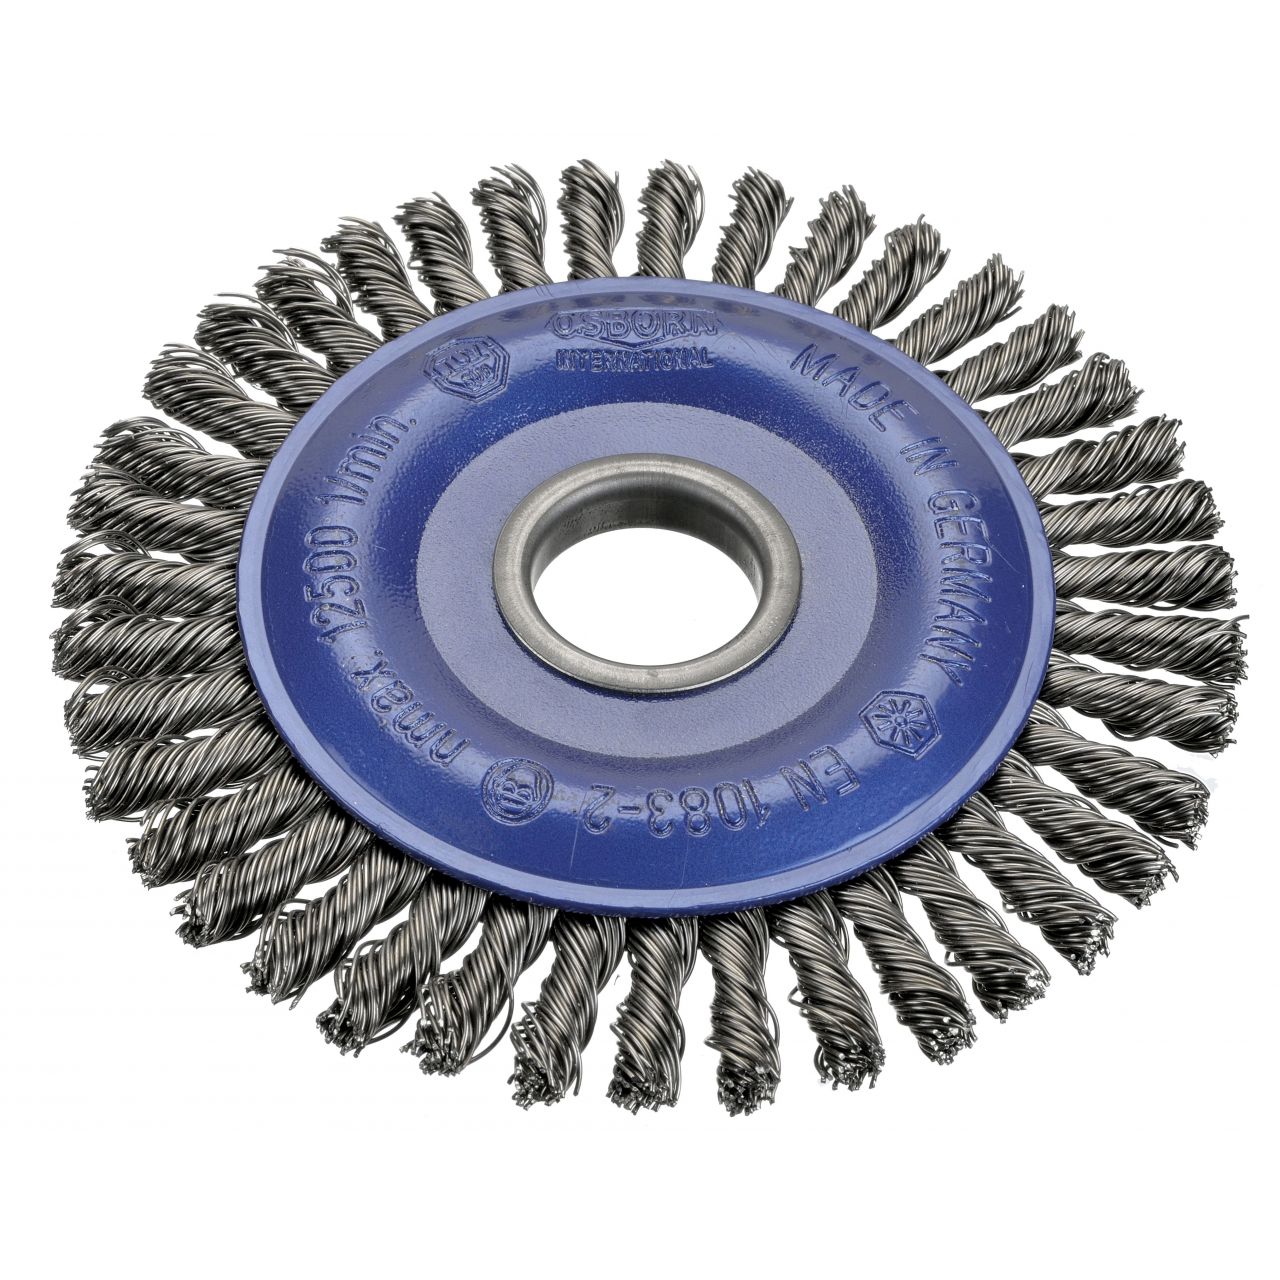 Cepillo circular inox de alambre trenzado especial soldadura con agujero 22,2 mm y filamento de Ø 0.35 mm (178x6 )